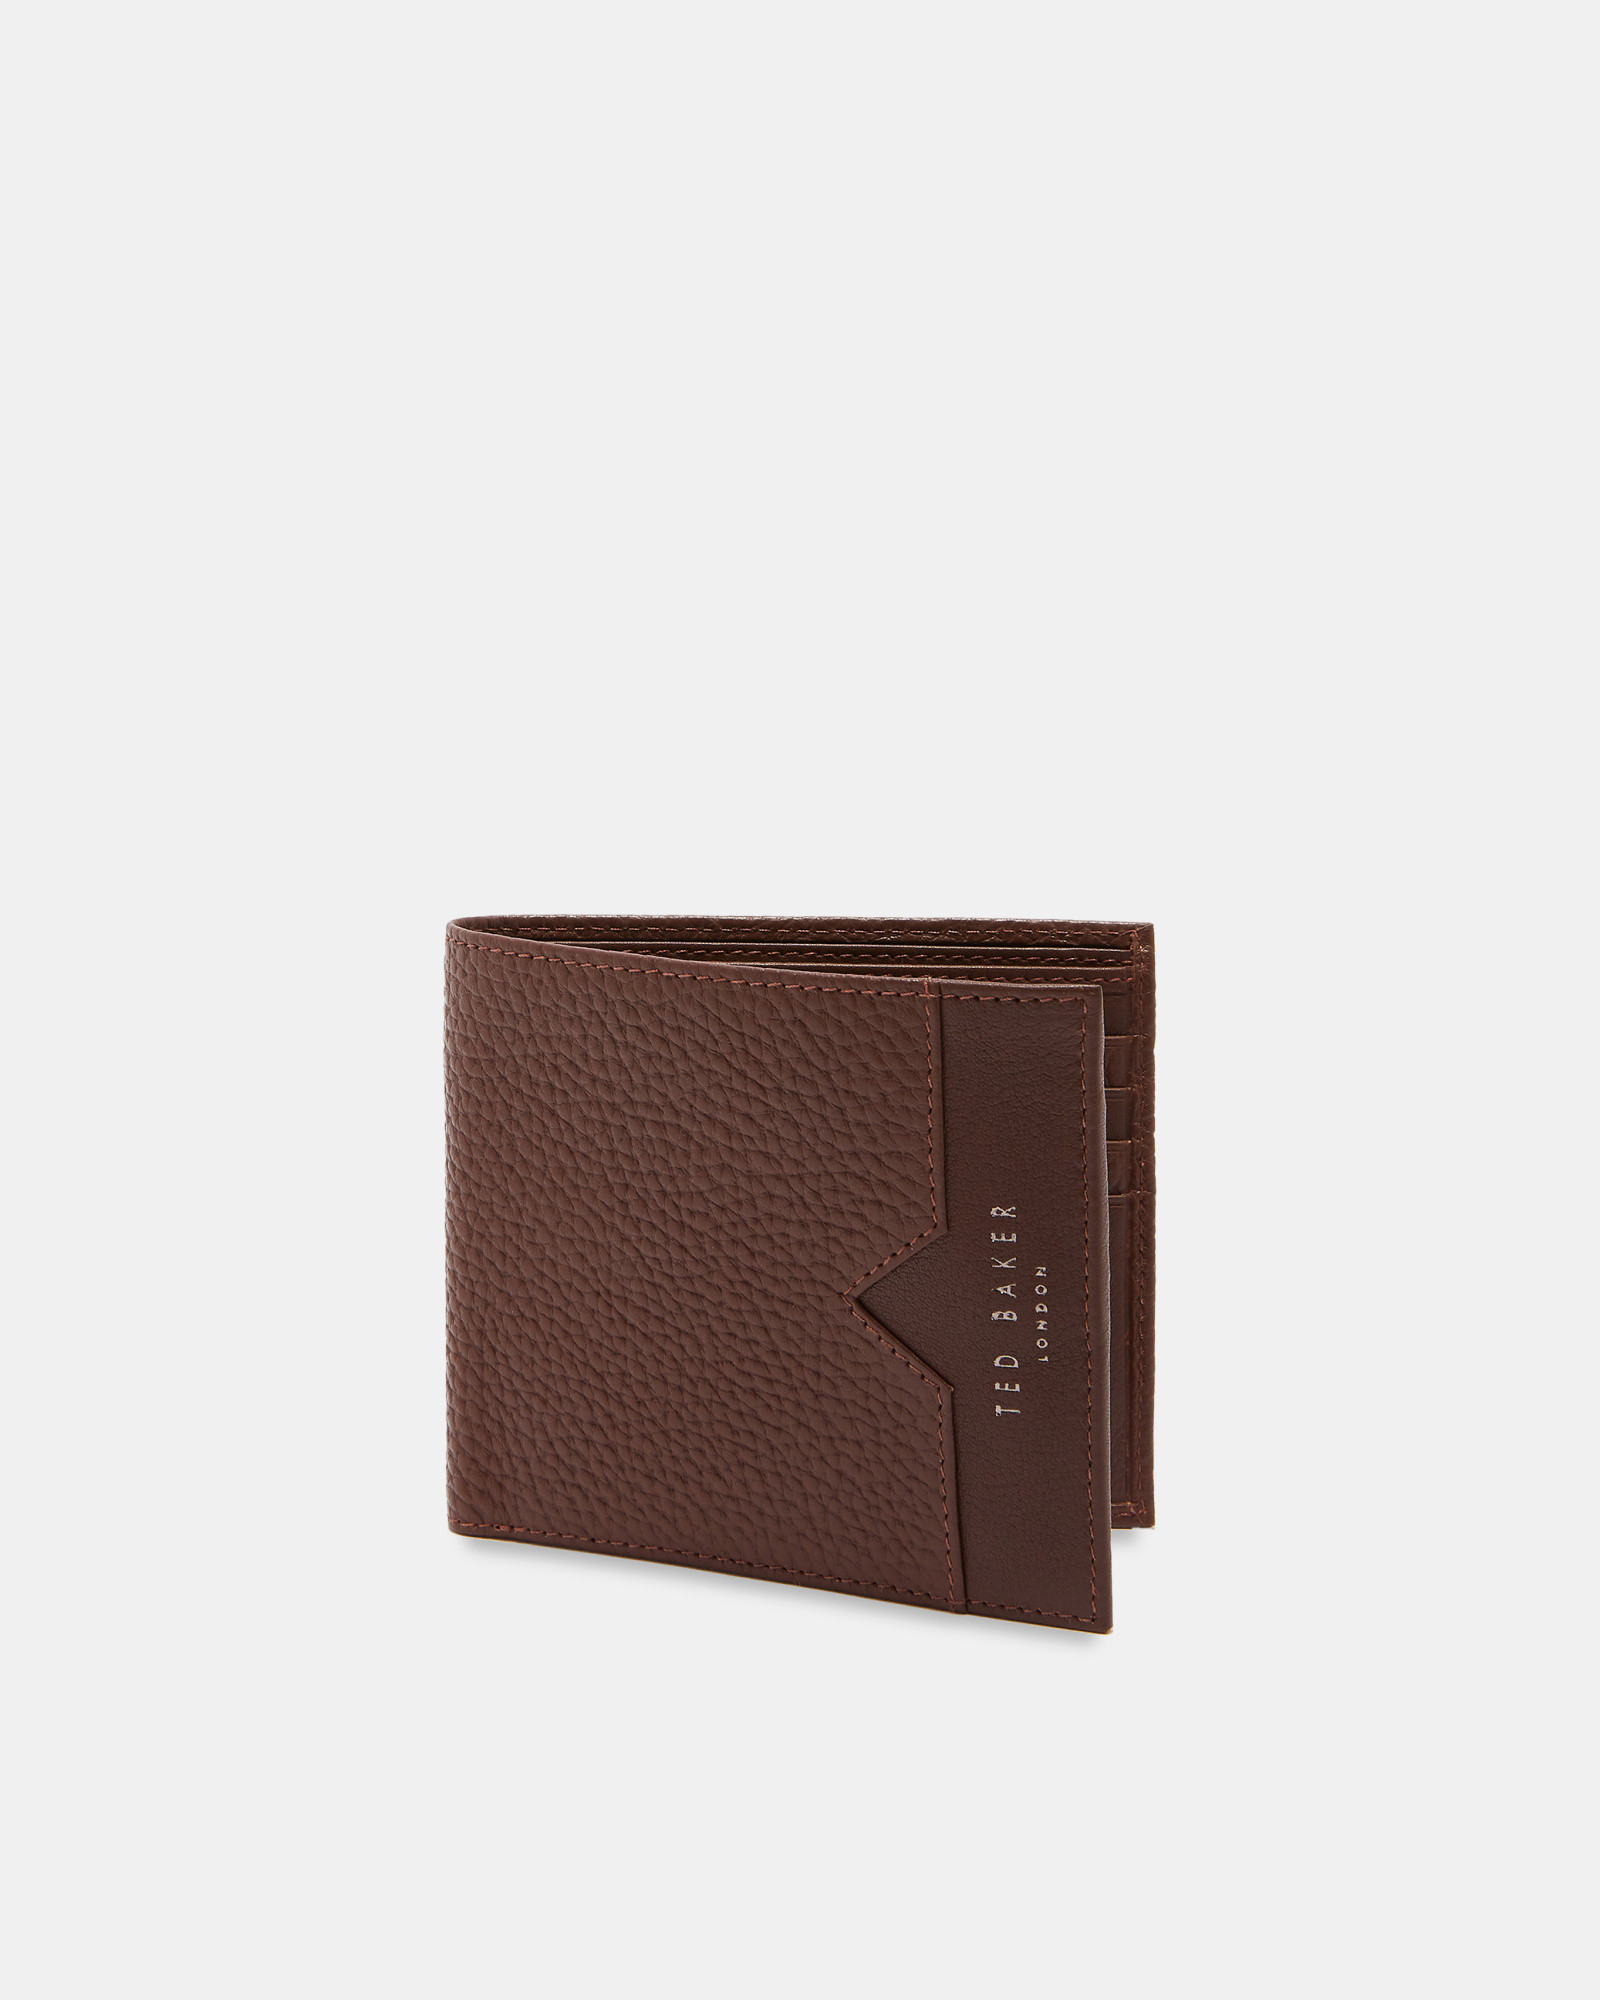 LOOEZE Leather bifold wallet